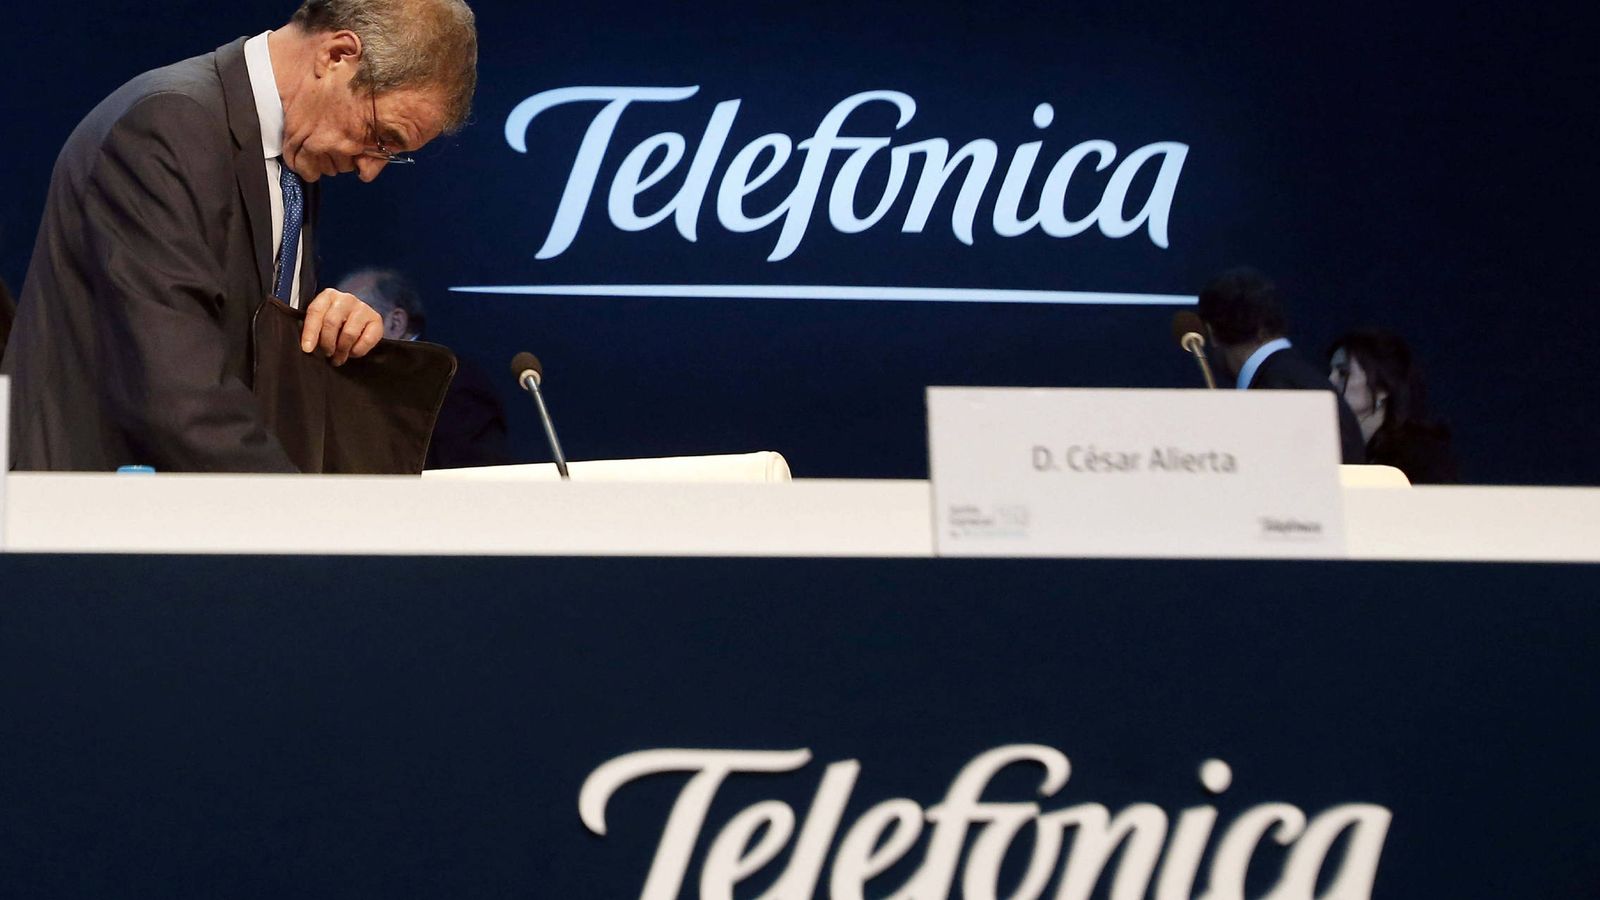 Foto: El presidente de Telefónica, César Alierta. (EFE)